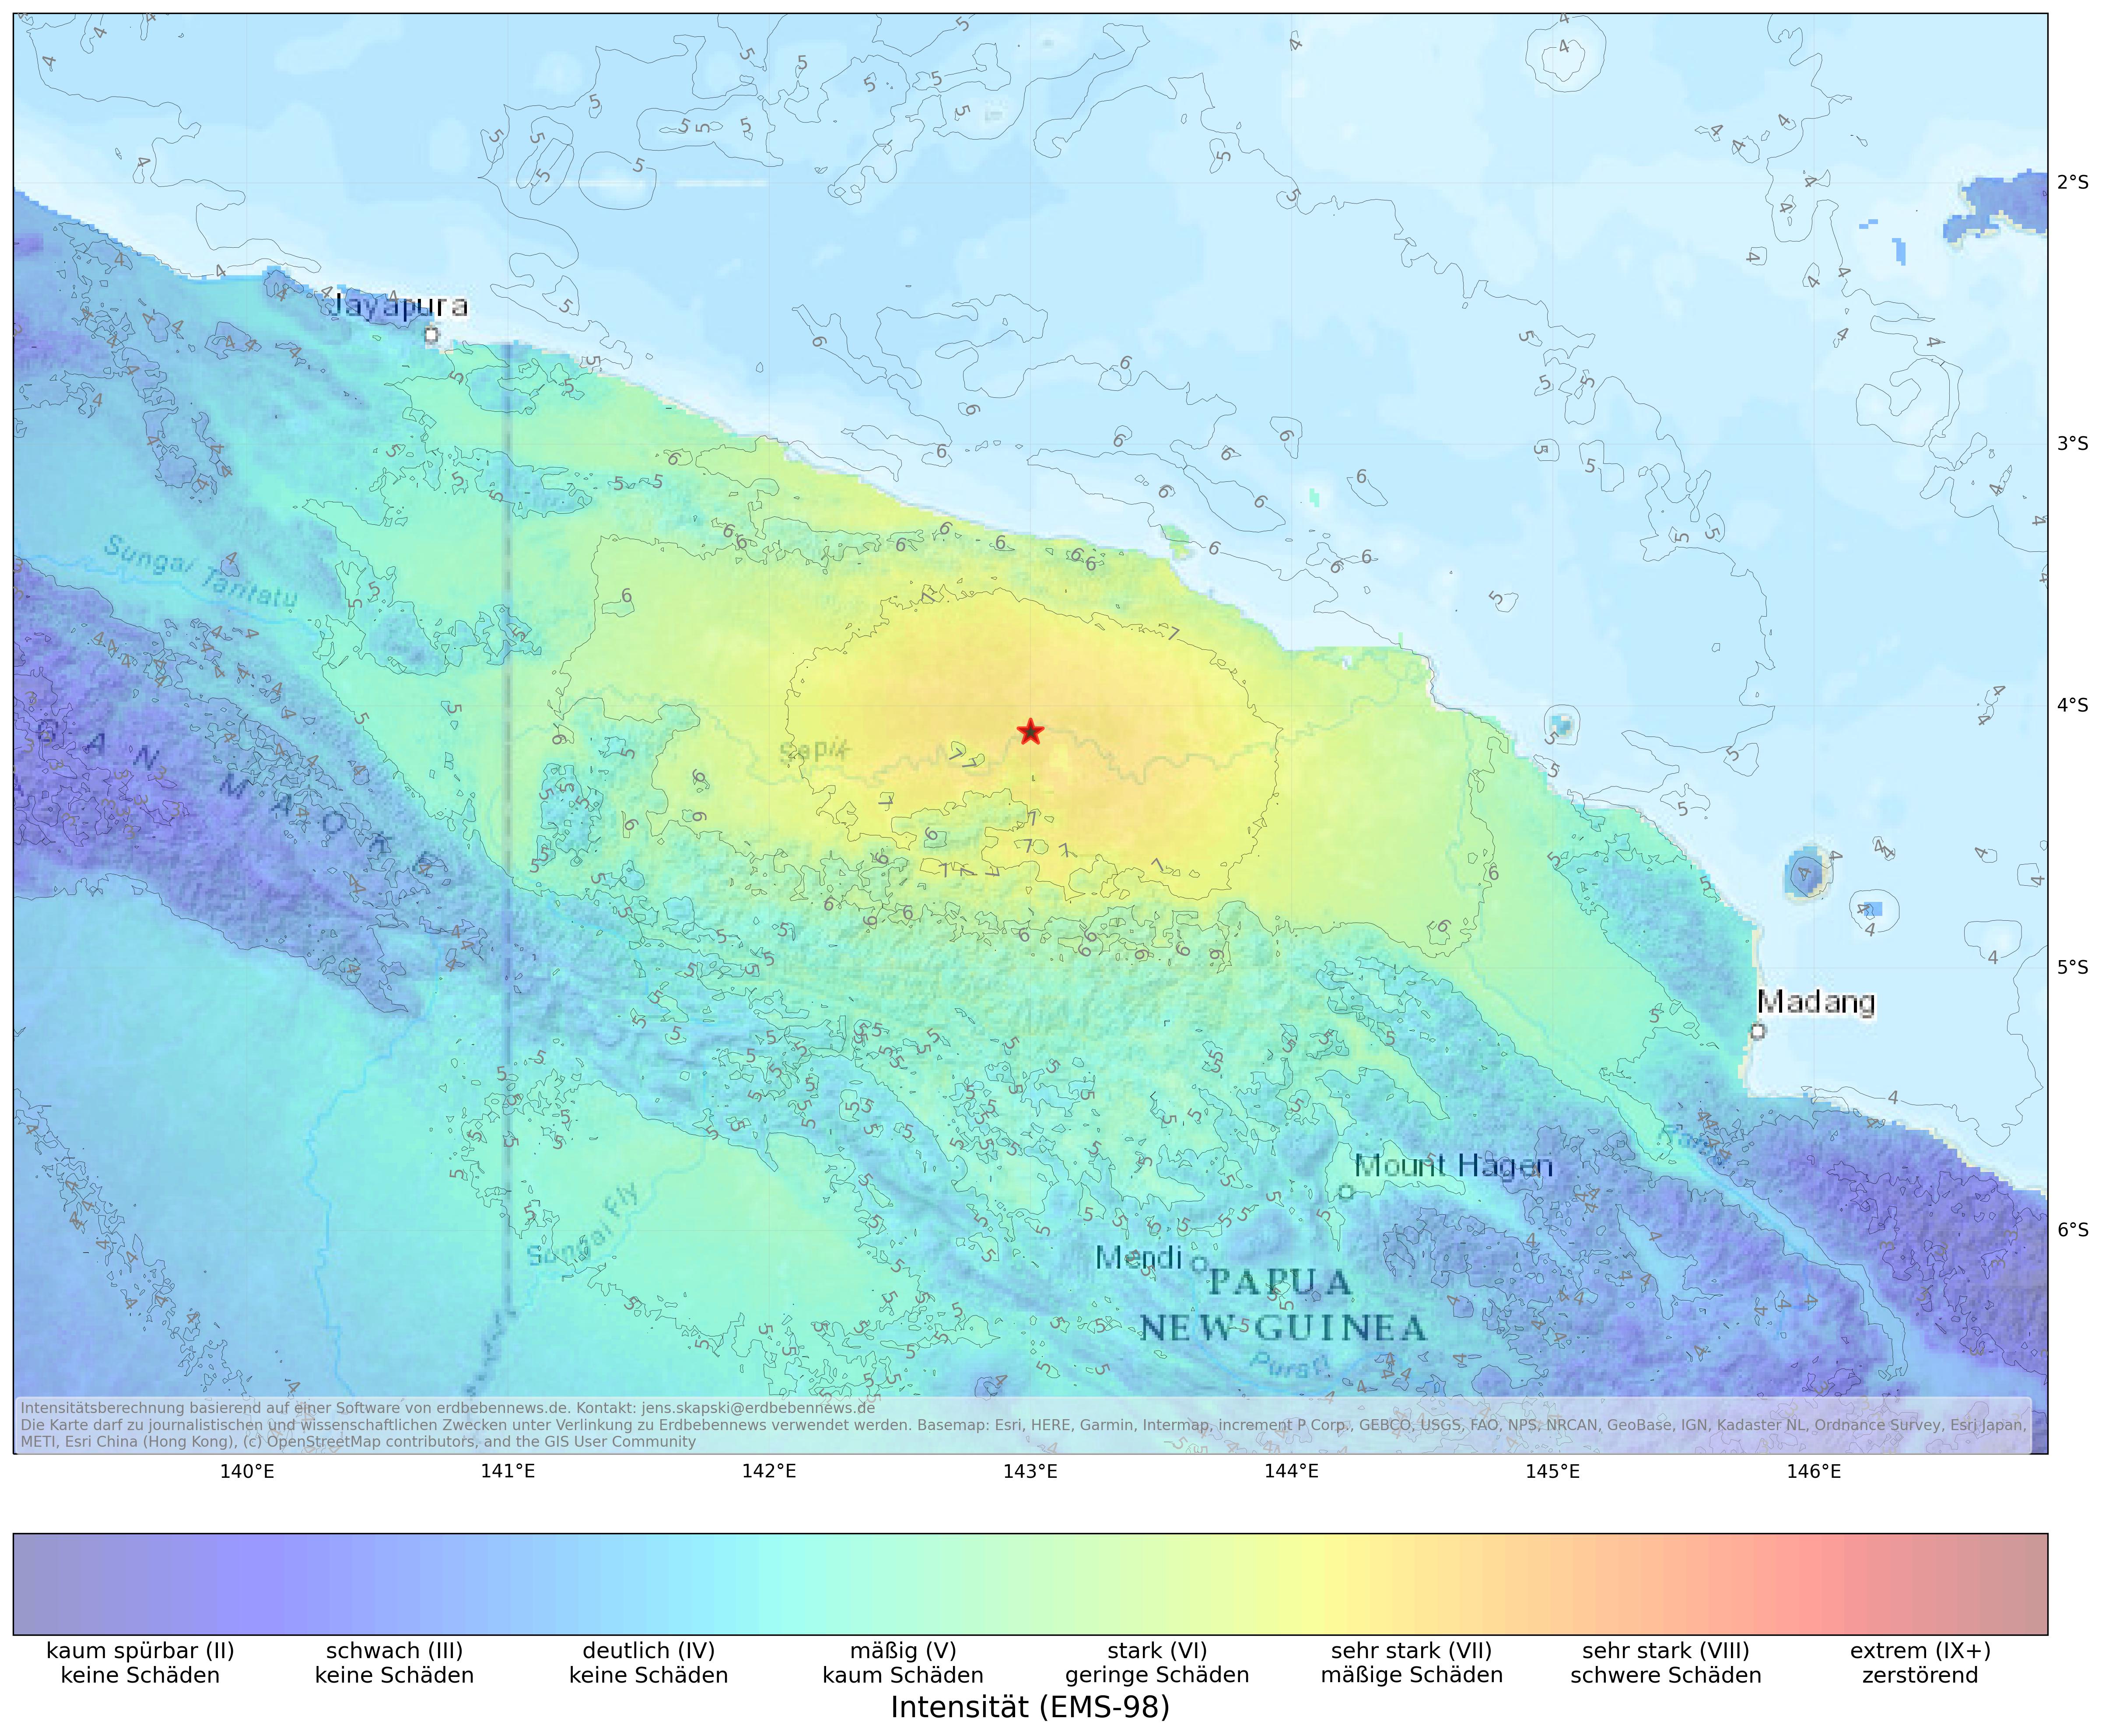 Berechnete Intensität (ShakeMap) des Erdbebens der Stärke 7.0 am 23. März, 21:22 Uhr in Papua Neuguinea